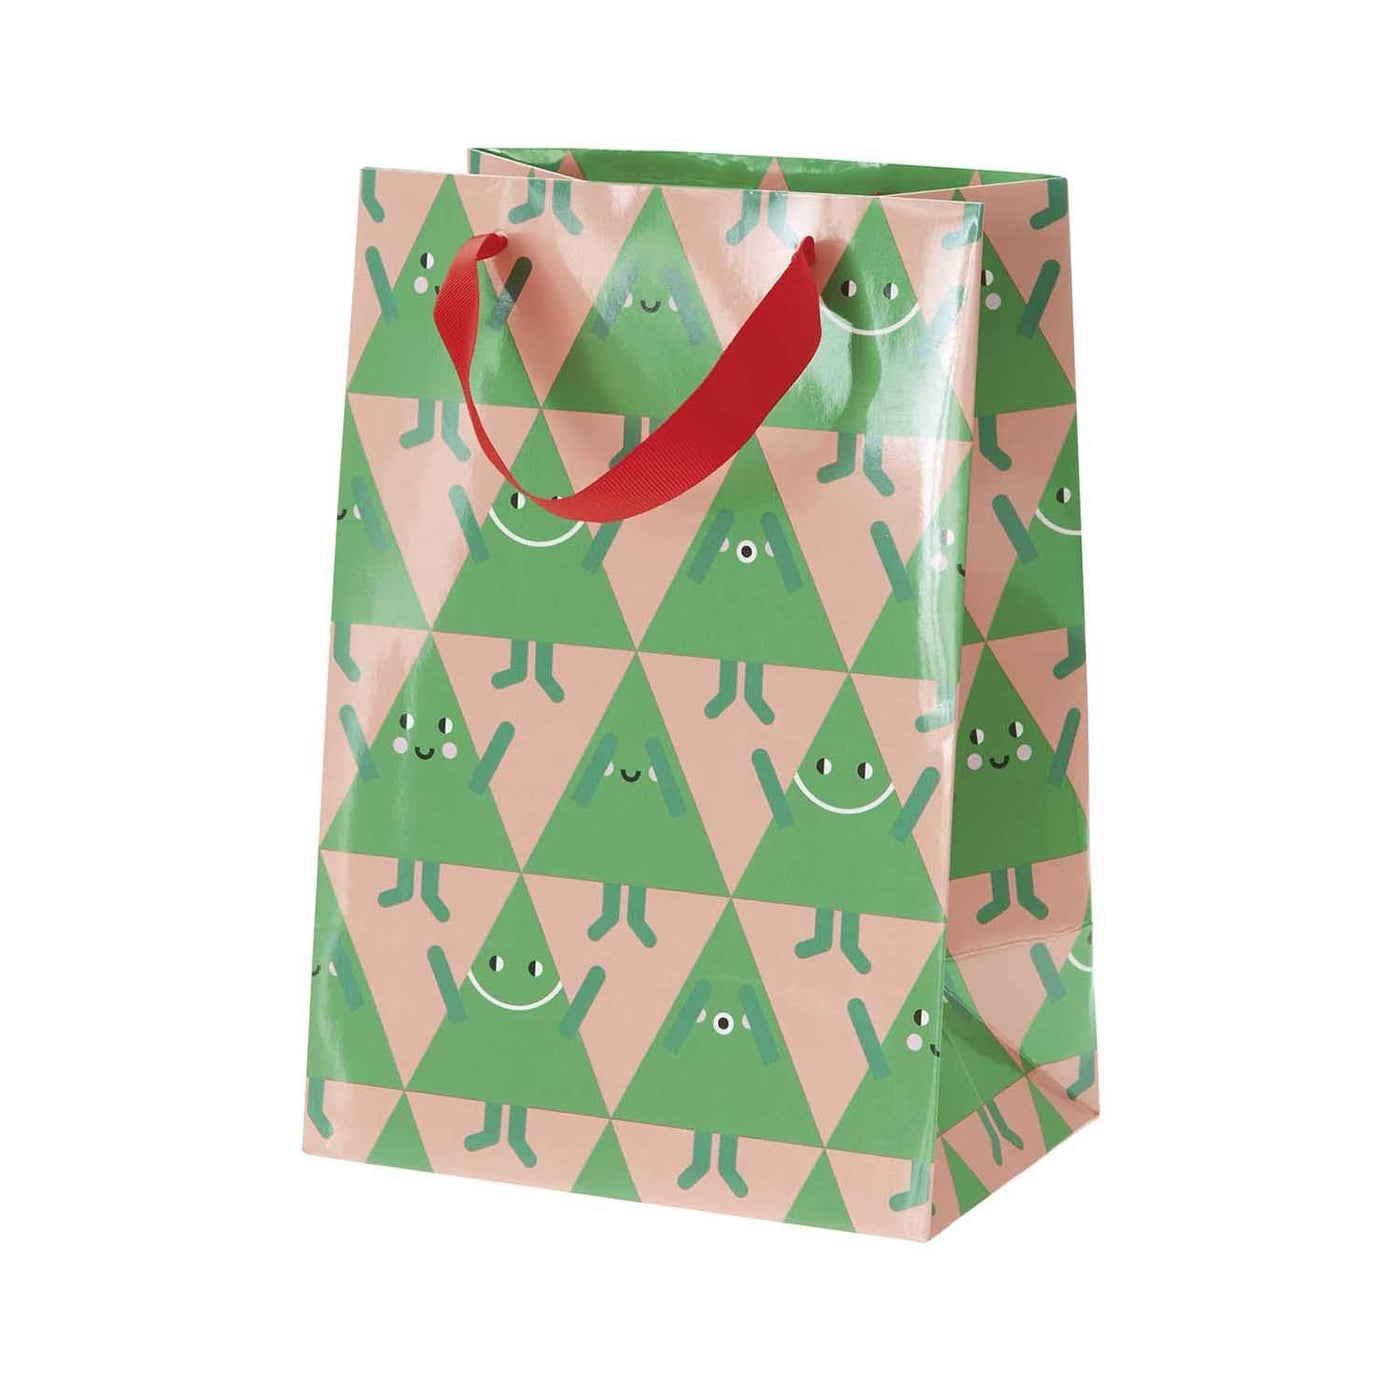 Christmas Gift Bag - Merry Christmas Fir Trees 18 x 26 x 12 cm